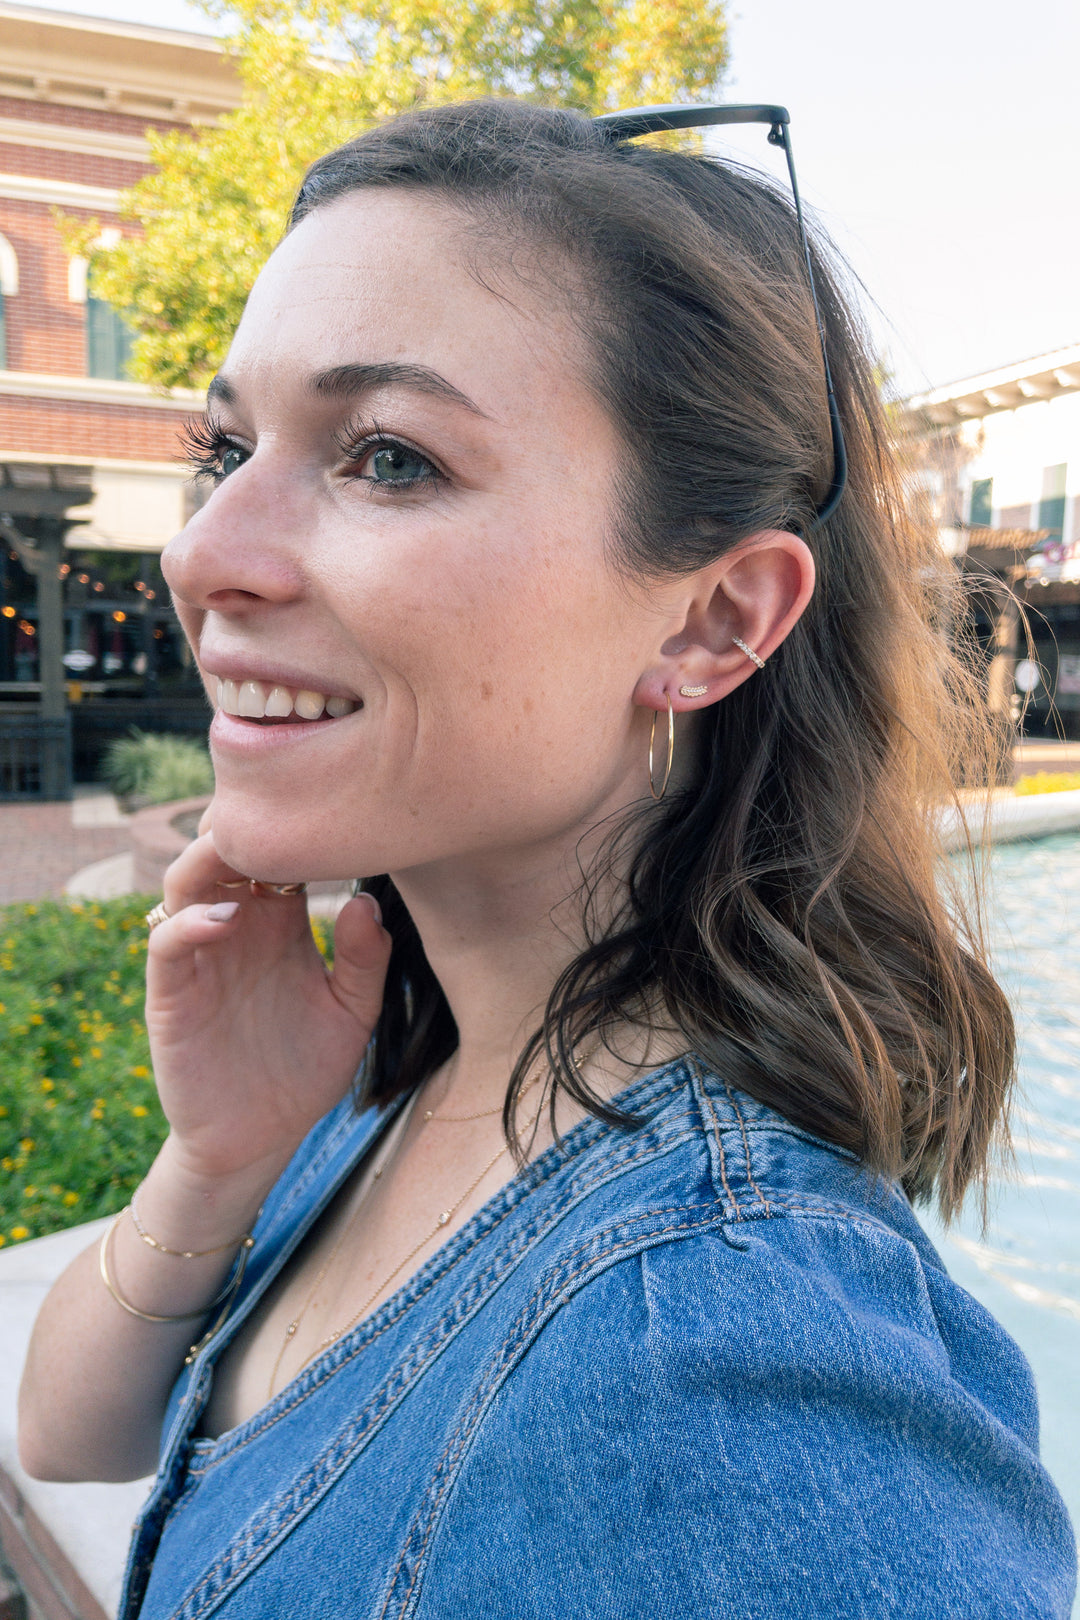 Diamond Cuff Earring